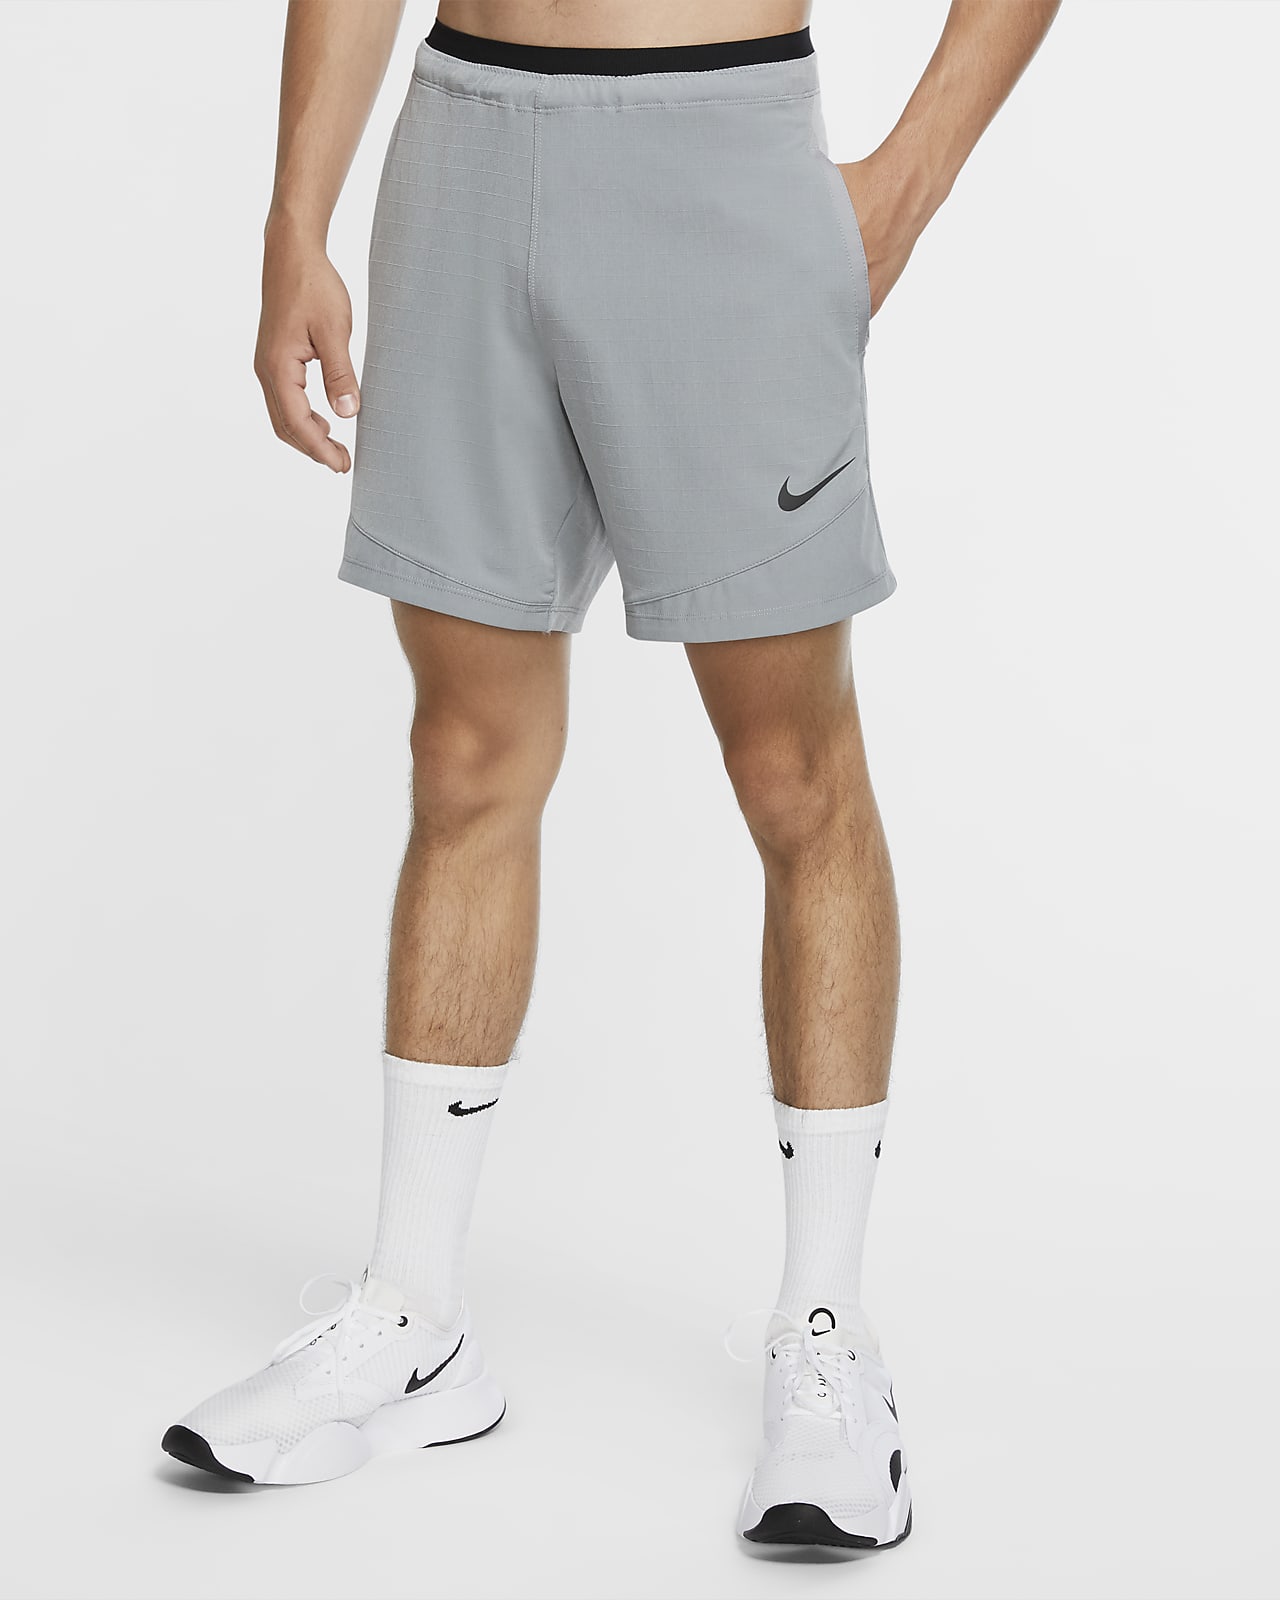 Shorts para hombre Nike Pro Rep. Nike.com